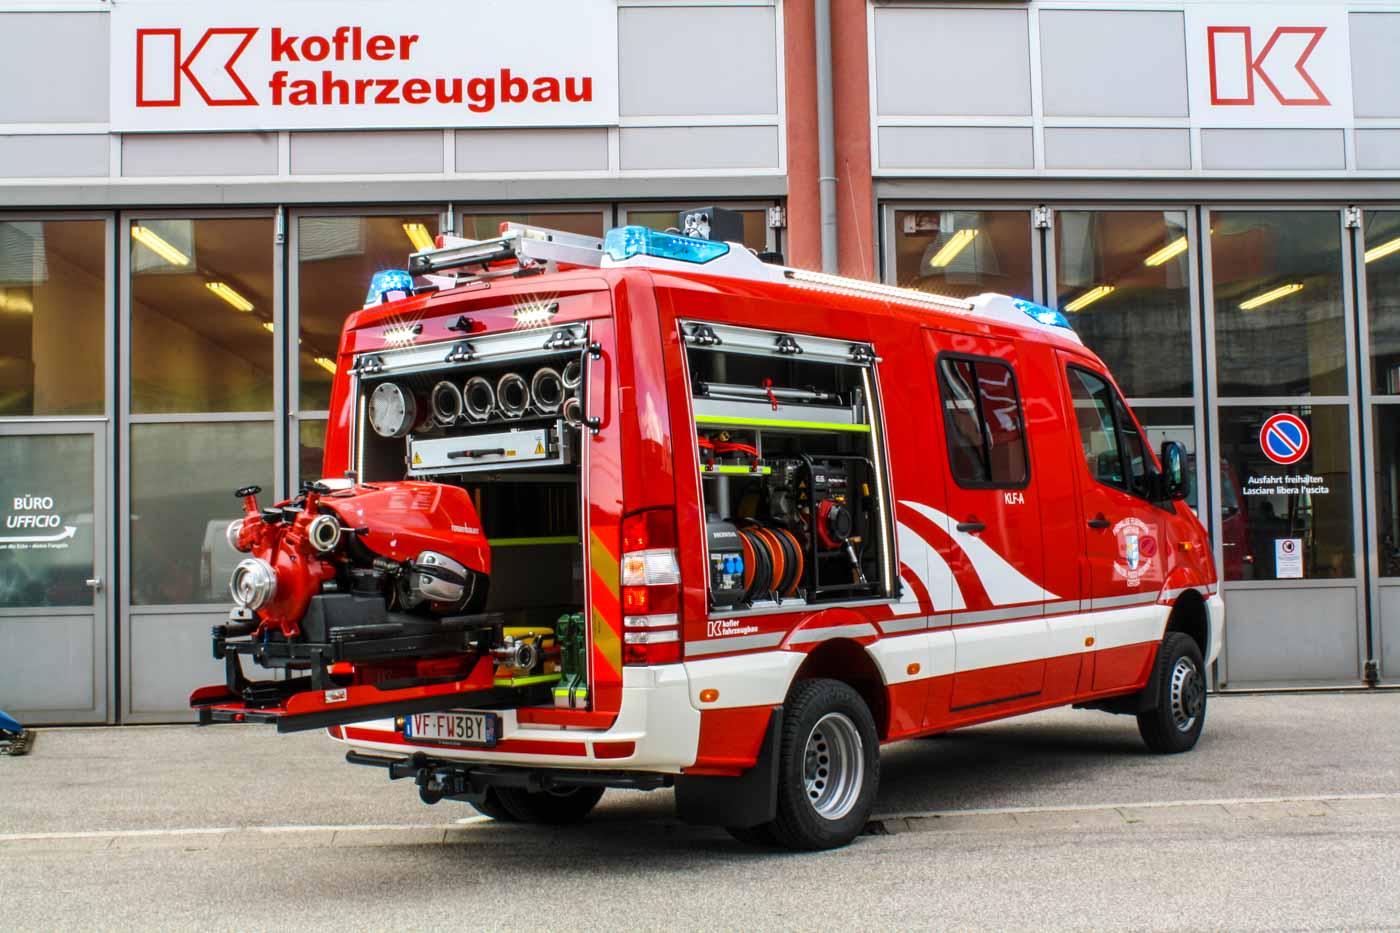 FF-Karthaus-Kofler-Fahrzeugbau